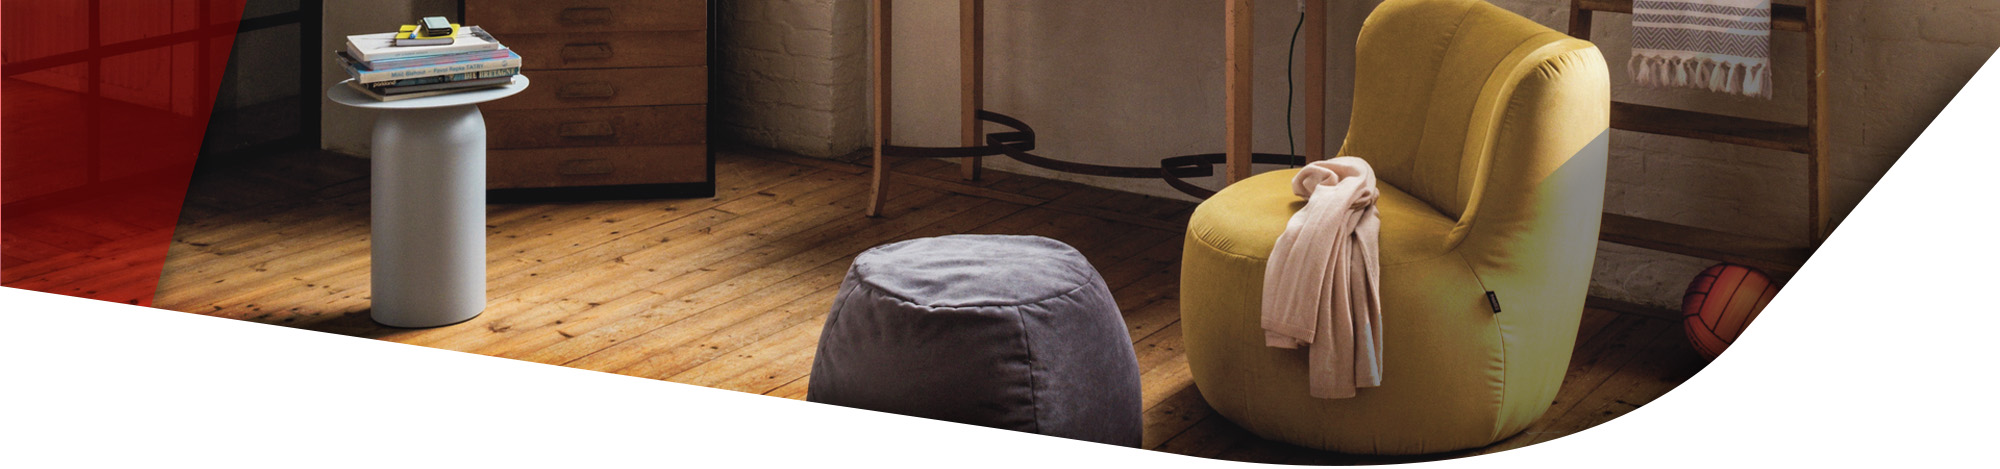 Gelber Sessel in Gummibärform mit passendem Hocker in einem Raum mit Holzfußboden stehend. 